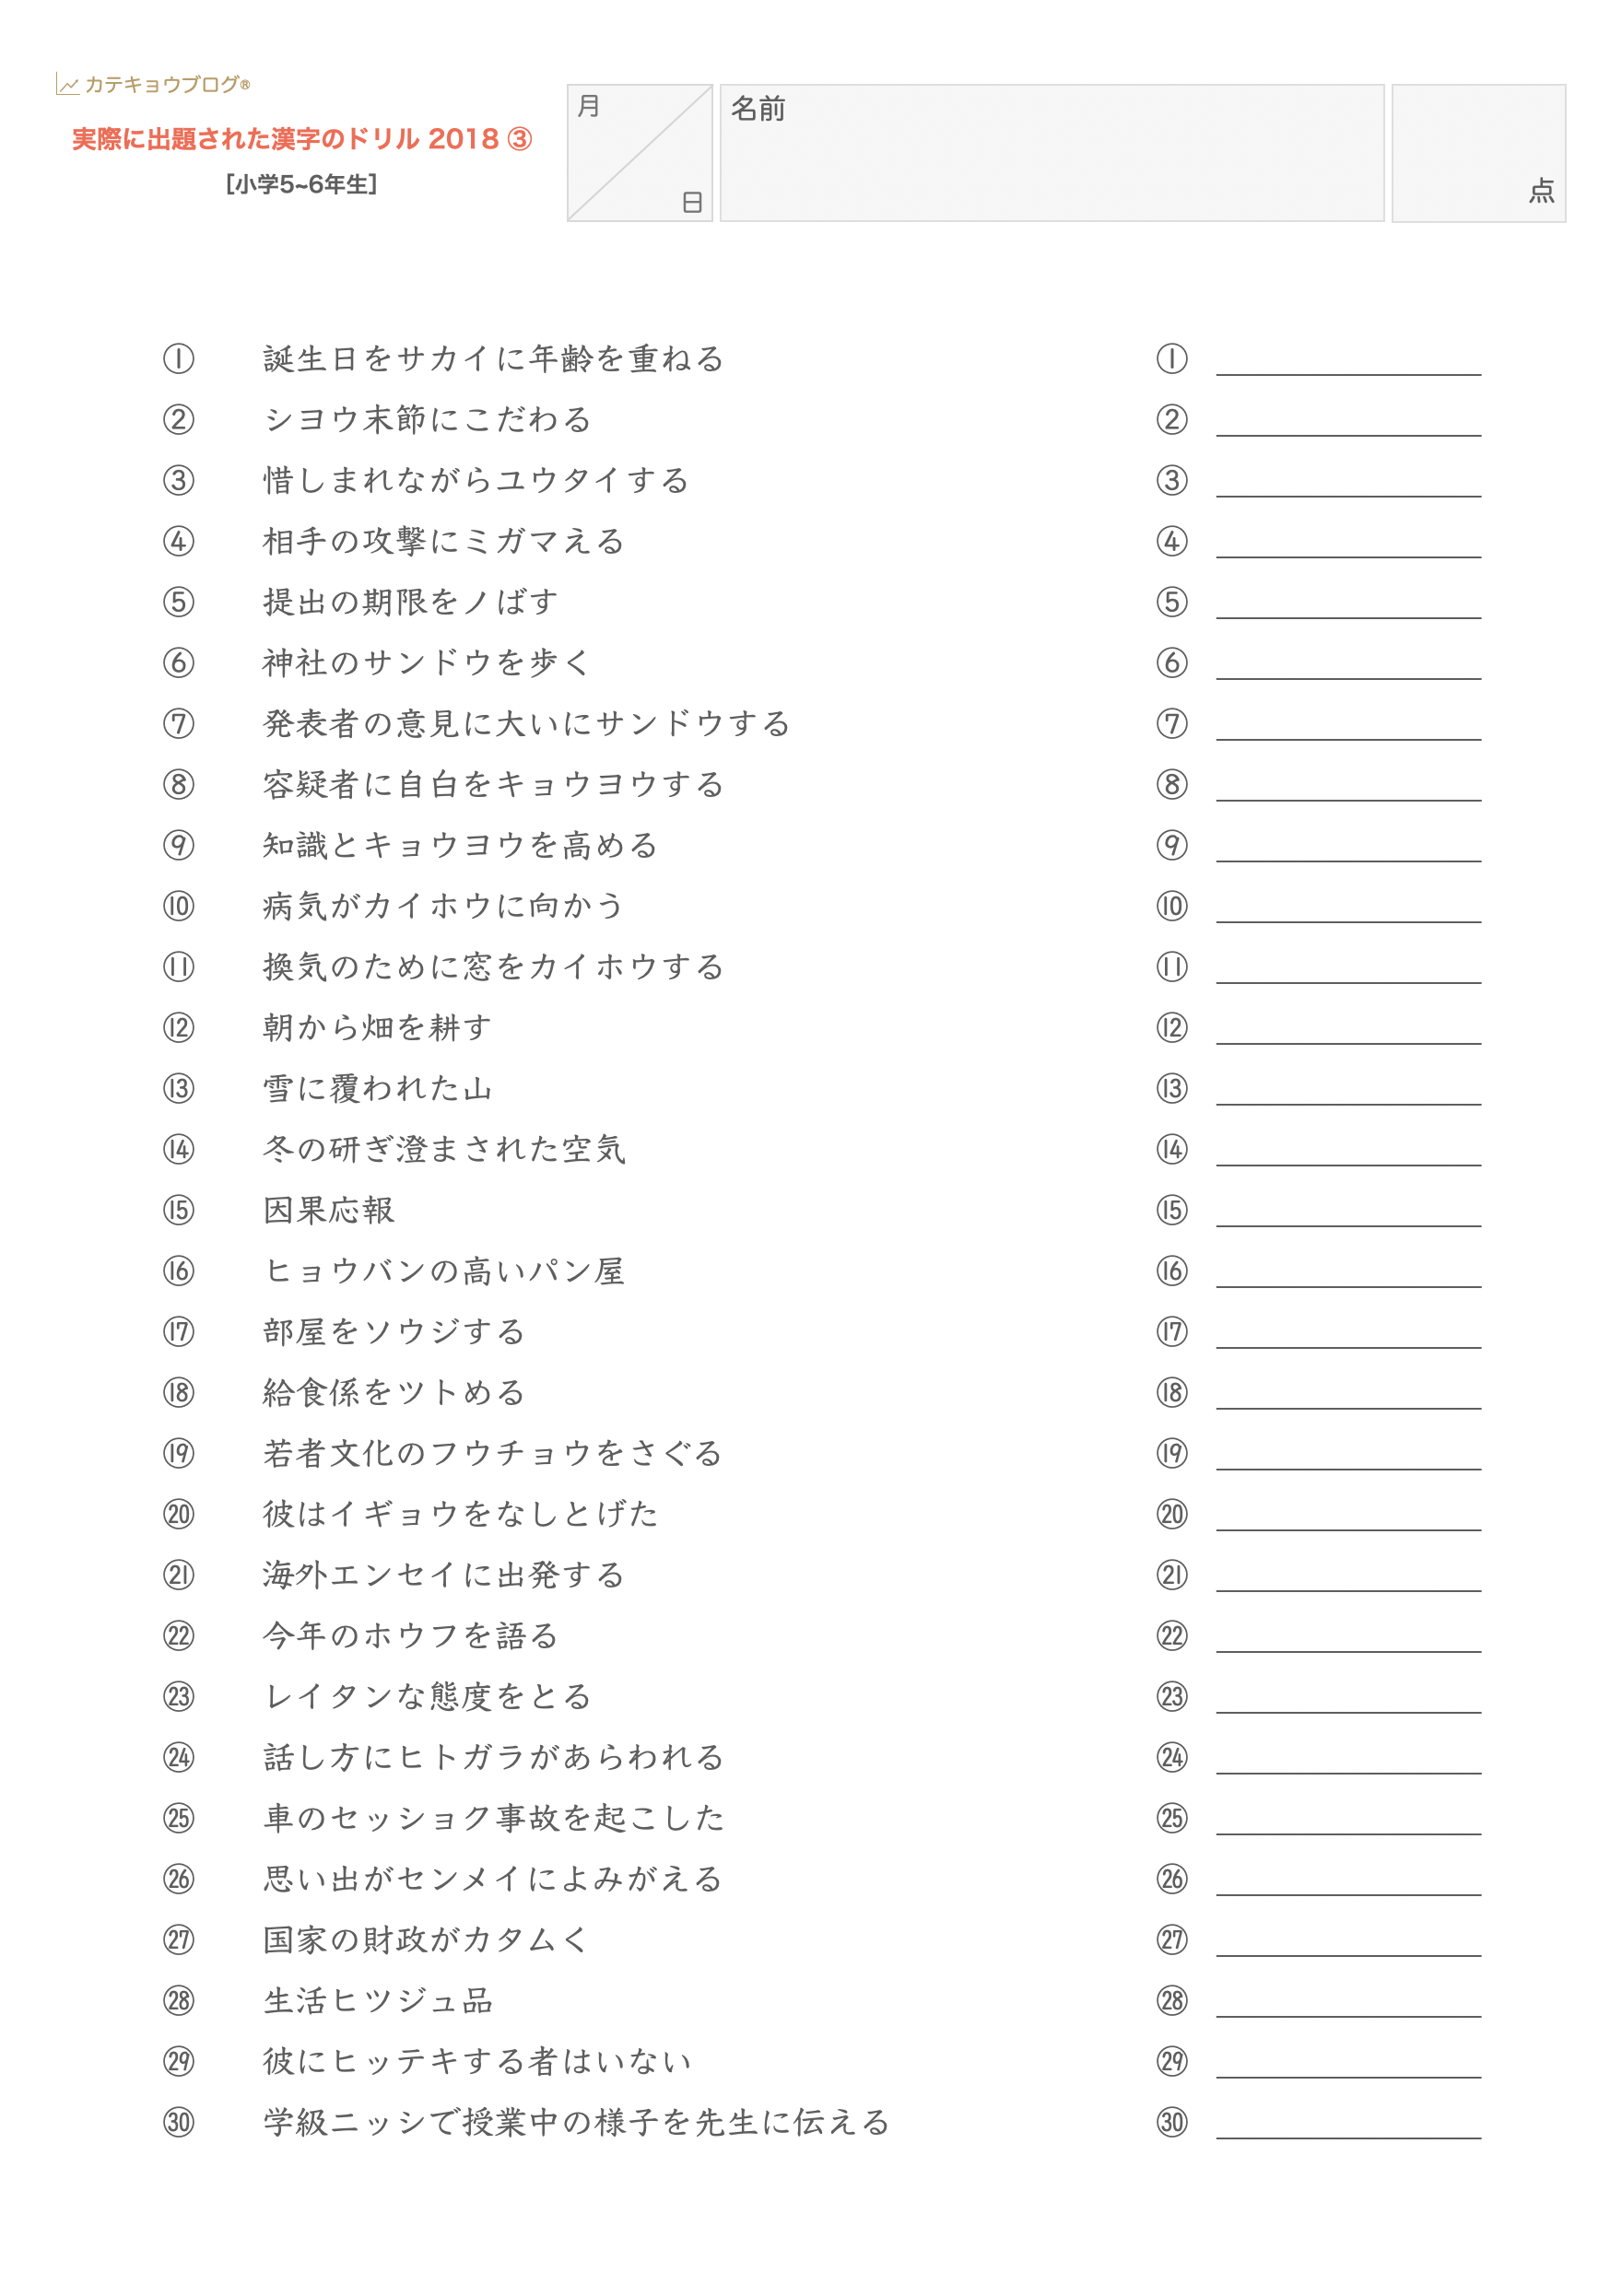 実際に出題された漢字のドリル 中学受験 カテキョウブログ